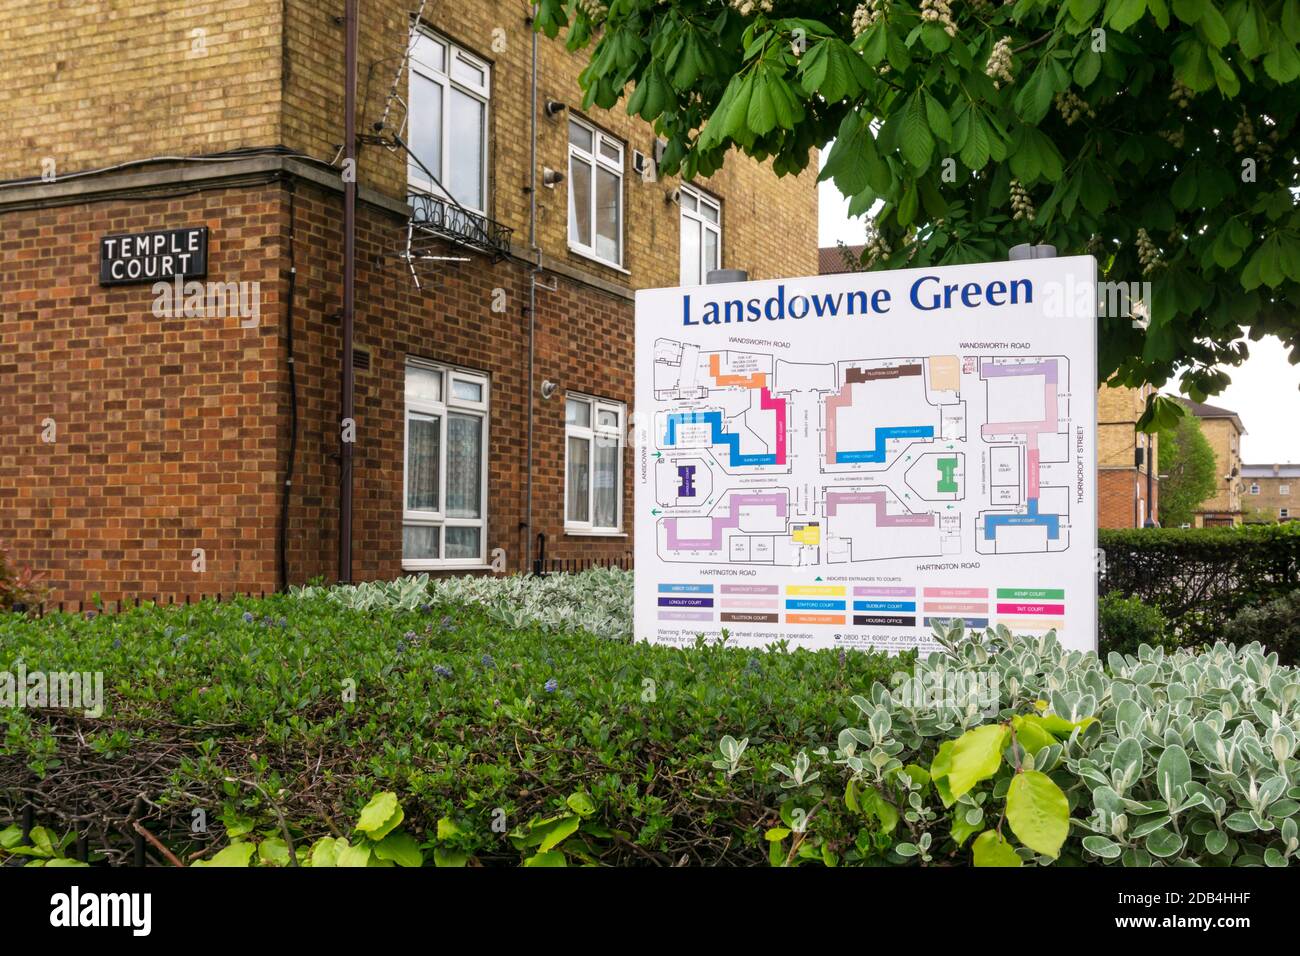 Plan immobilier pour le domaine de Lansdowne Green sur Wandsworth Road. Banque D'Images